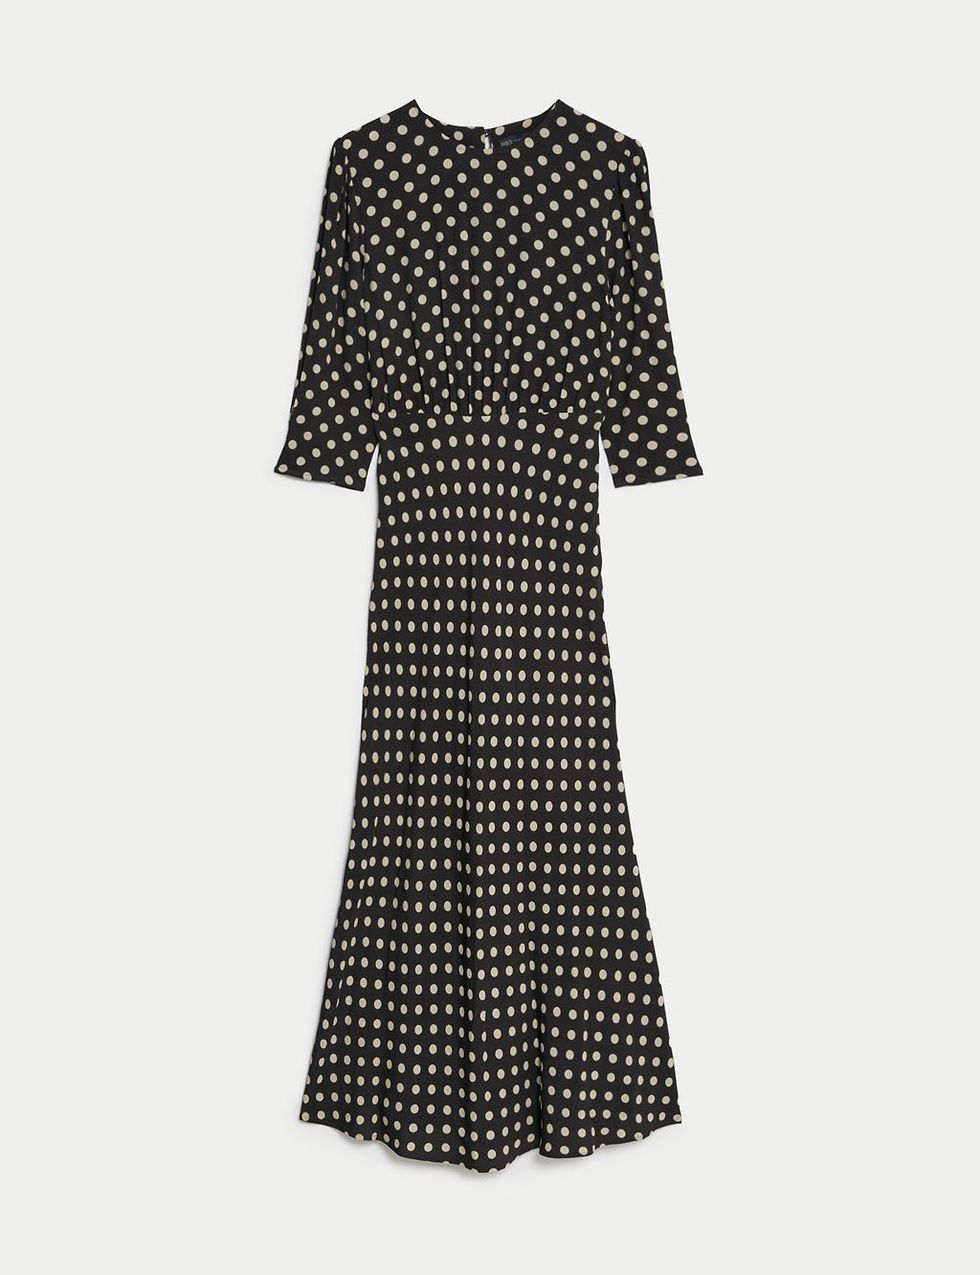 Best Marks & Spencer Dresses 2023: M&S autumn dresses